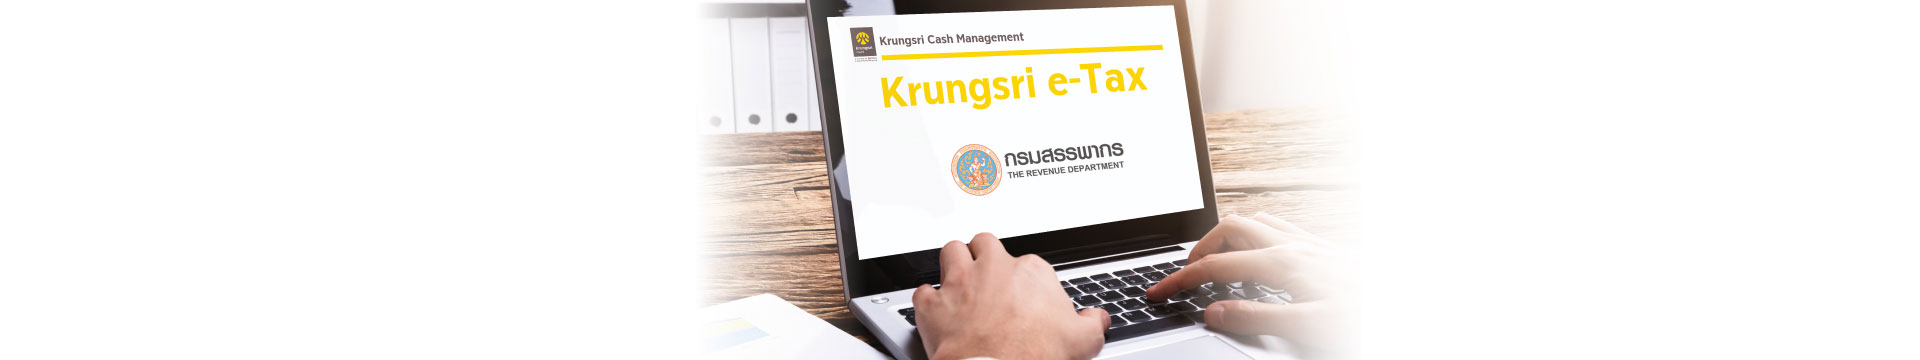 Krungsri e-Tax